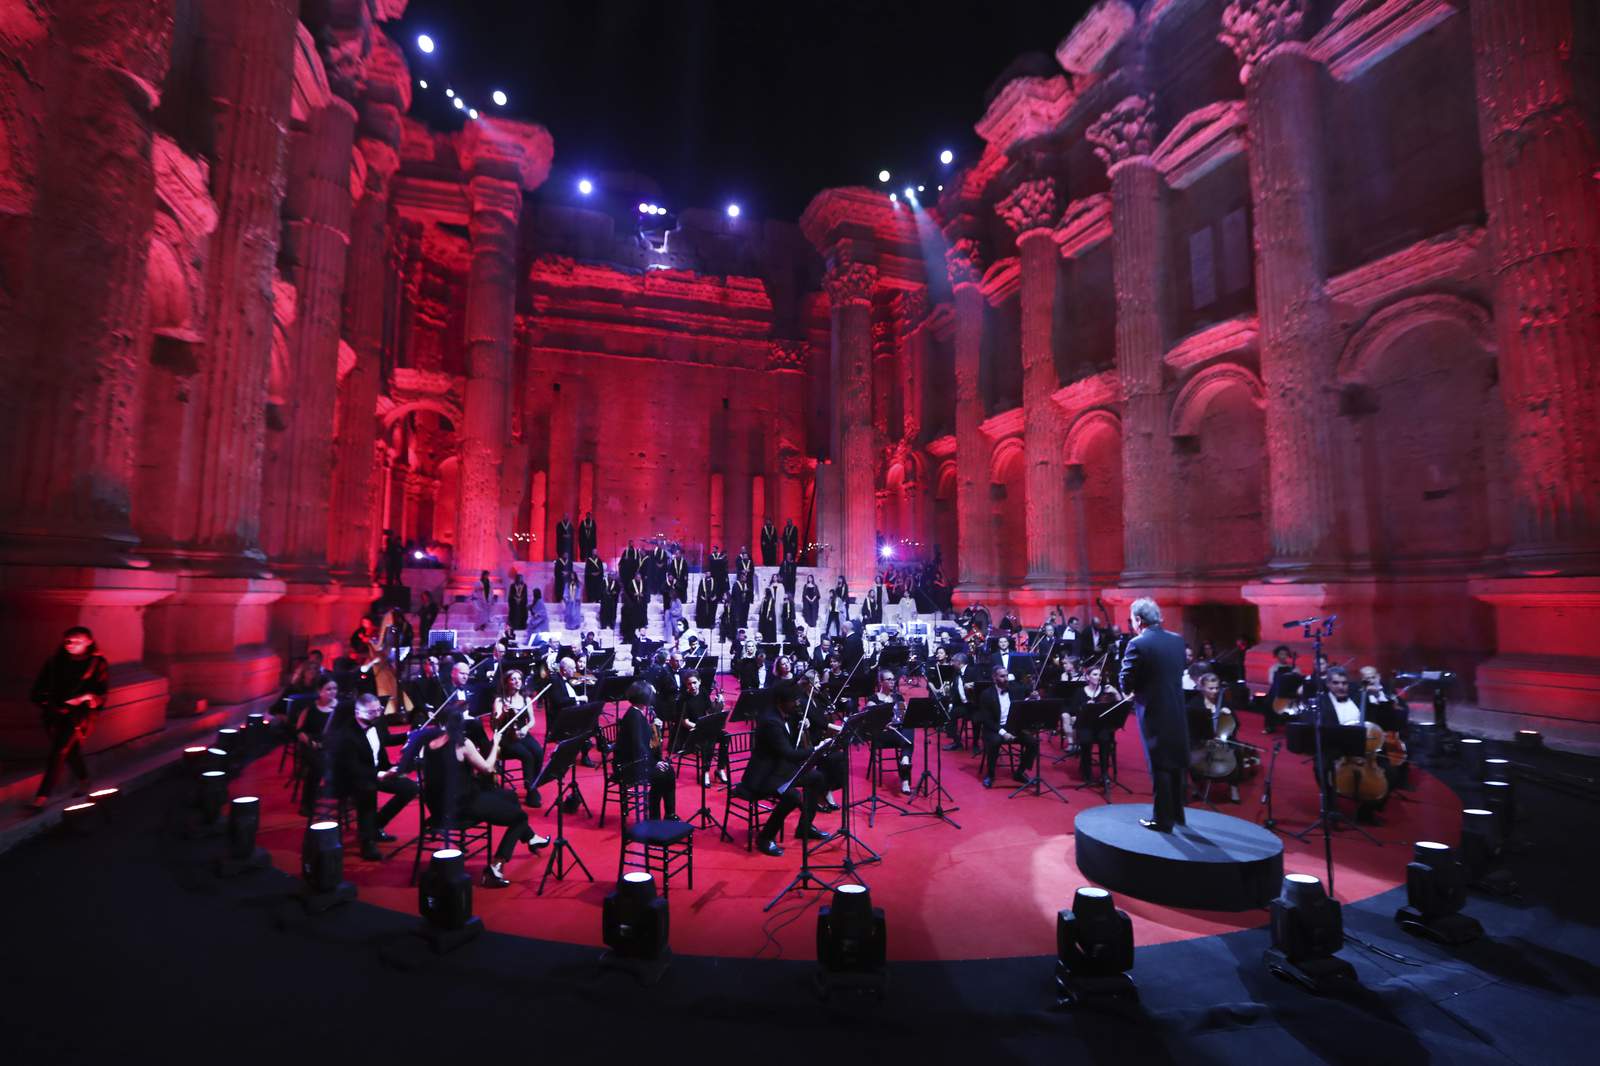 Lebanon holds Baalbek concert despite virus, economic crisis